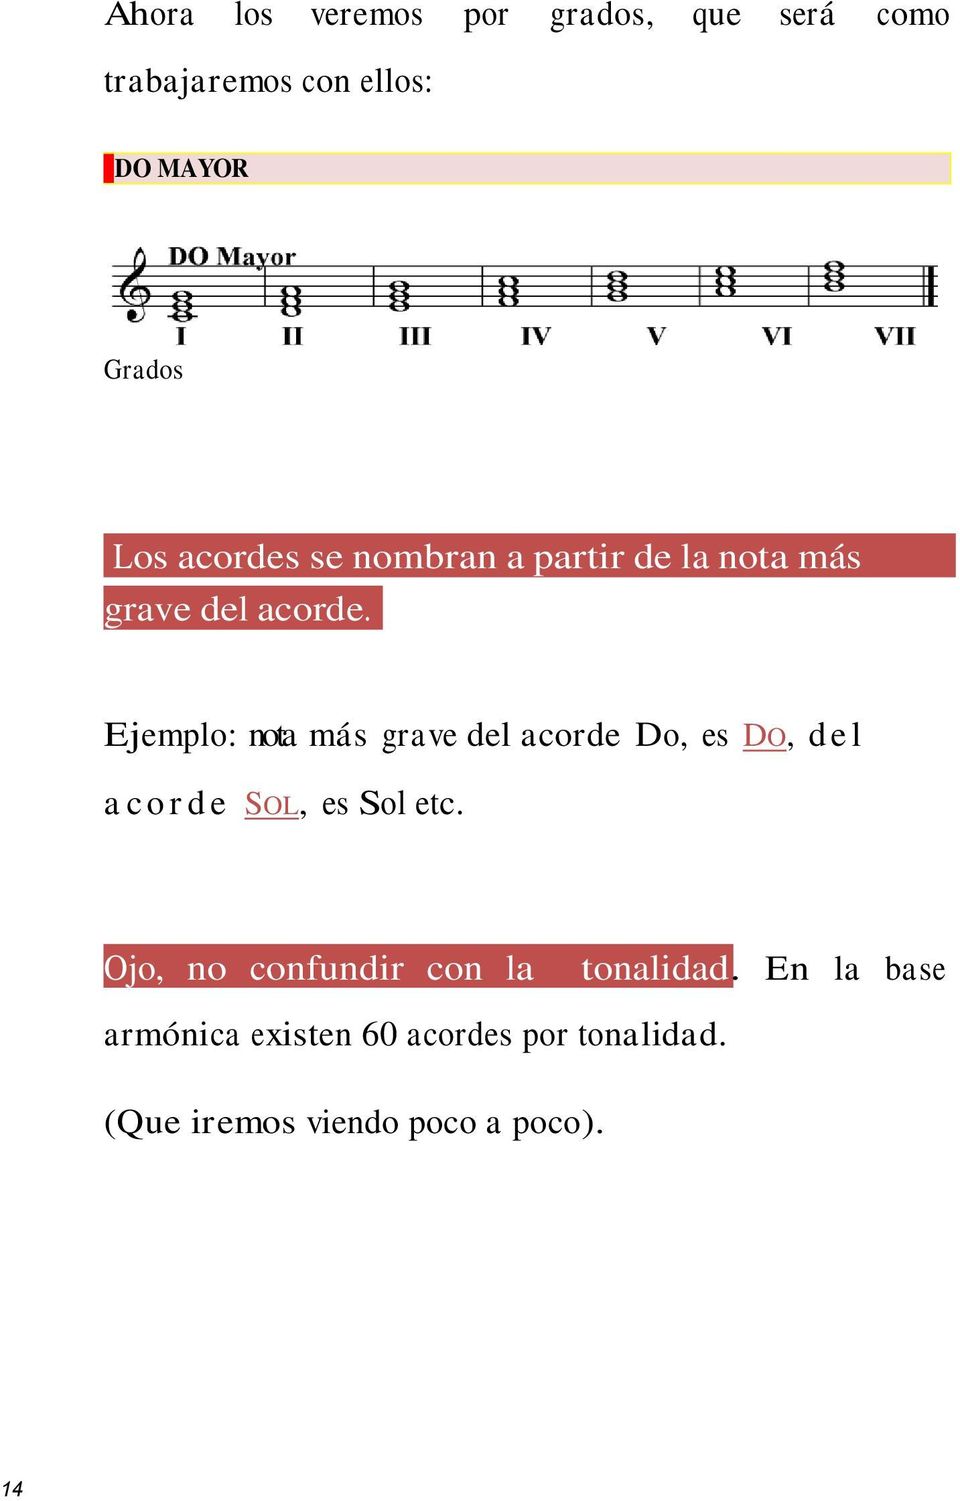 Ejemplo: nota más grave del acorde Do, es DO, del acorde SOL, es Sol etc.